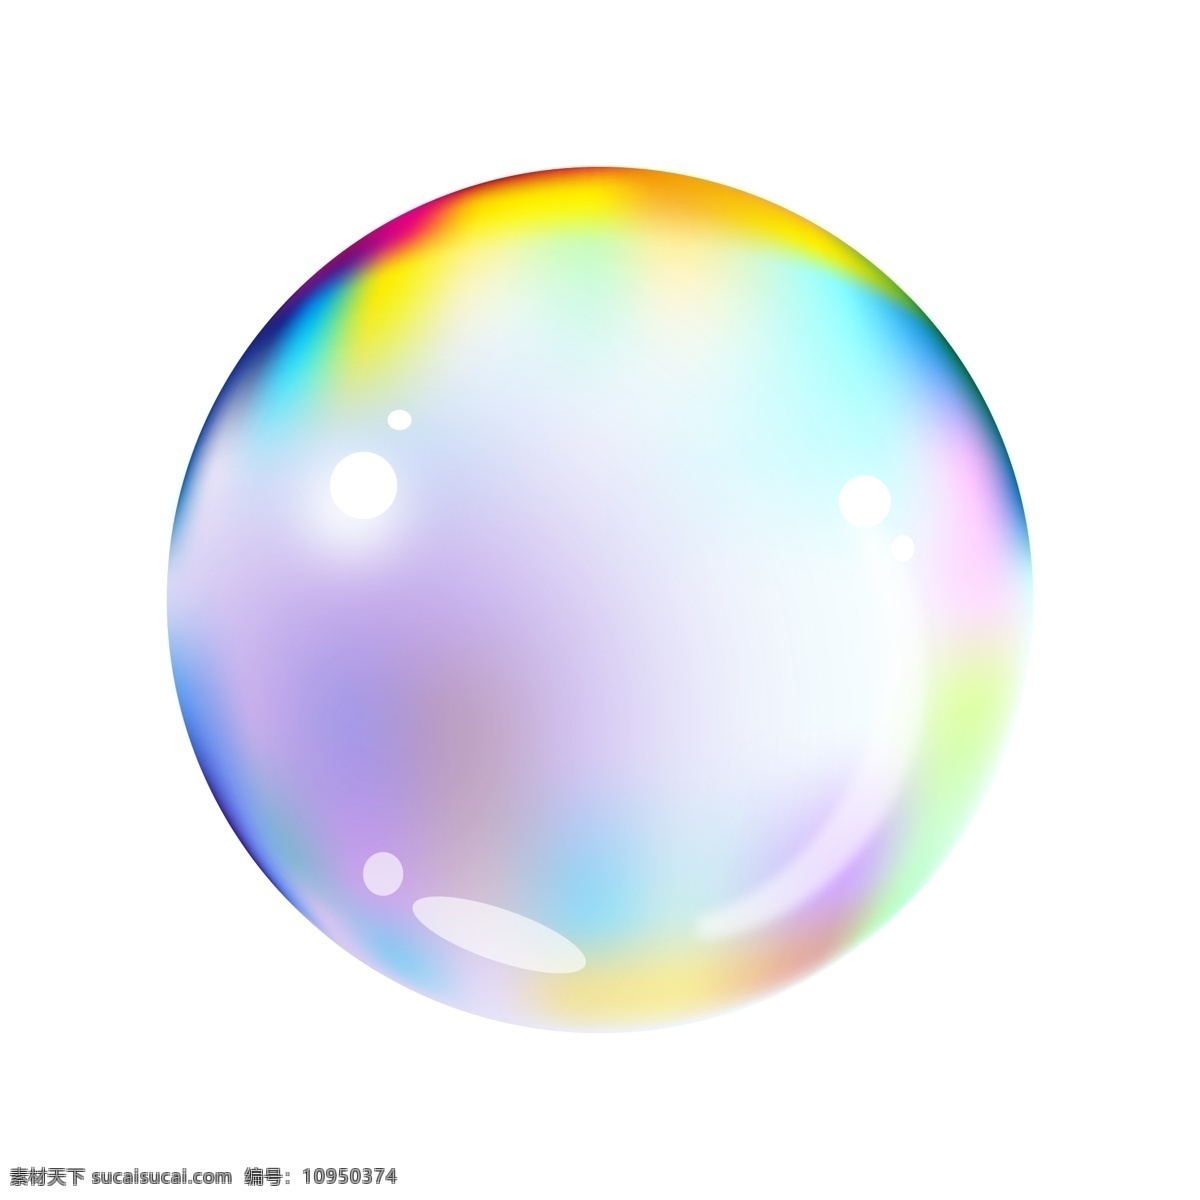 圆圆 炫彩 气泡 插画 炫彩的气泡 卡通插画 气泡插画 泡泡插画 晶莹的气泡 漂亮的气泡 漂浮的气泡